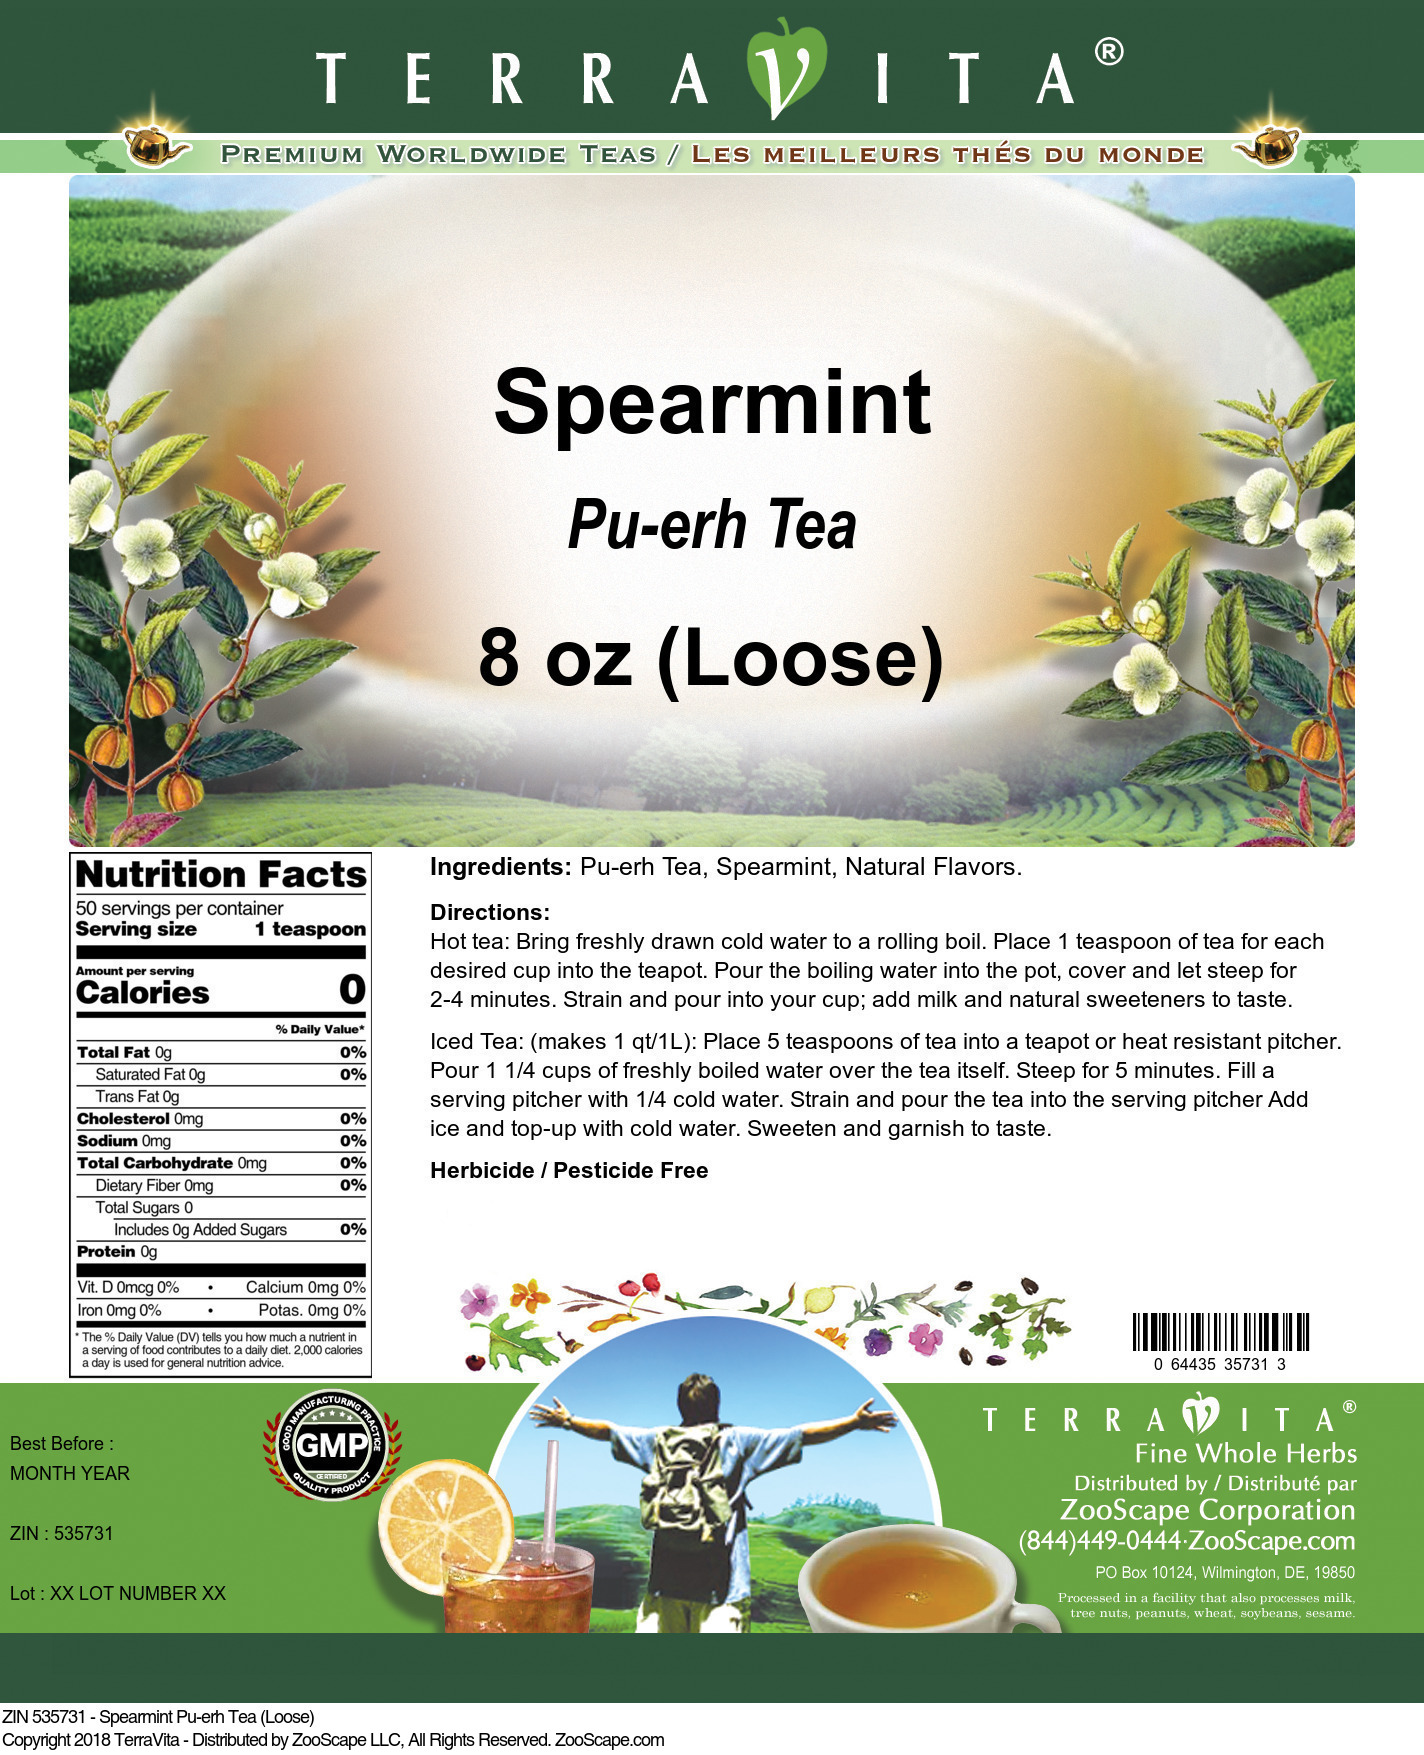 Spearmint Pu-erh Tea (Loose) - Label